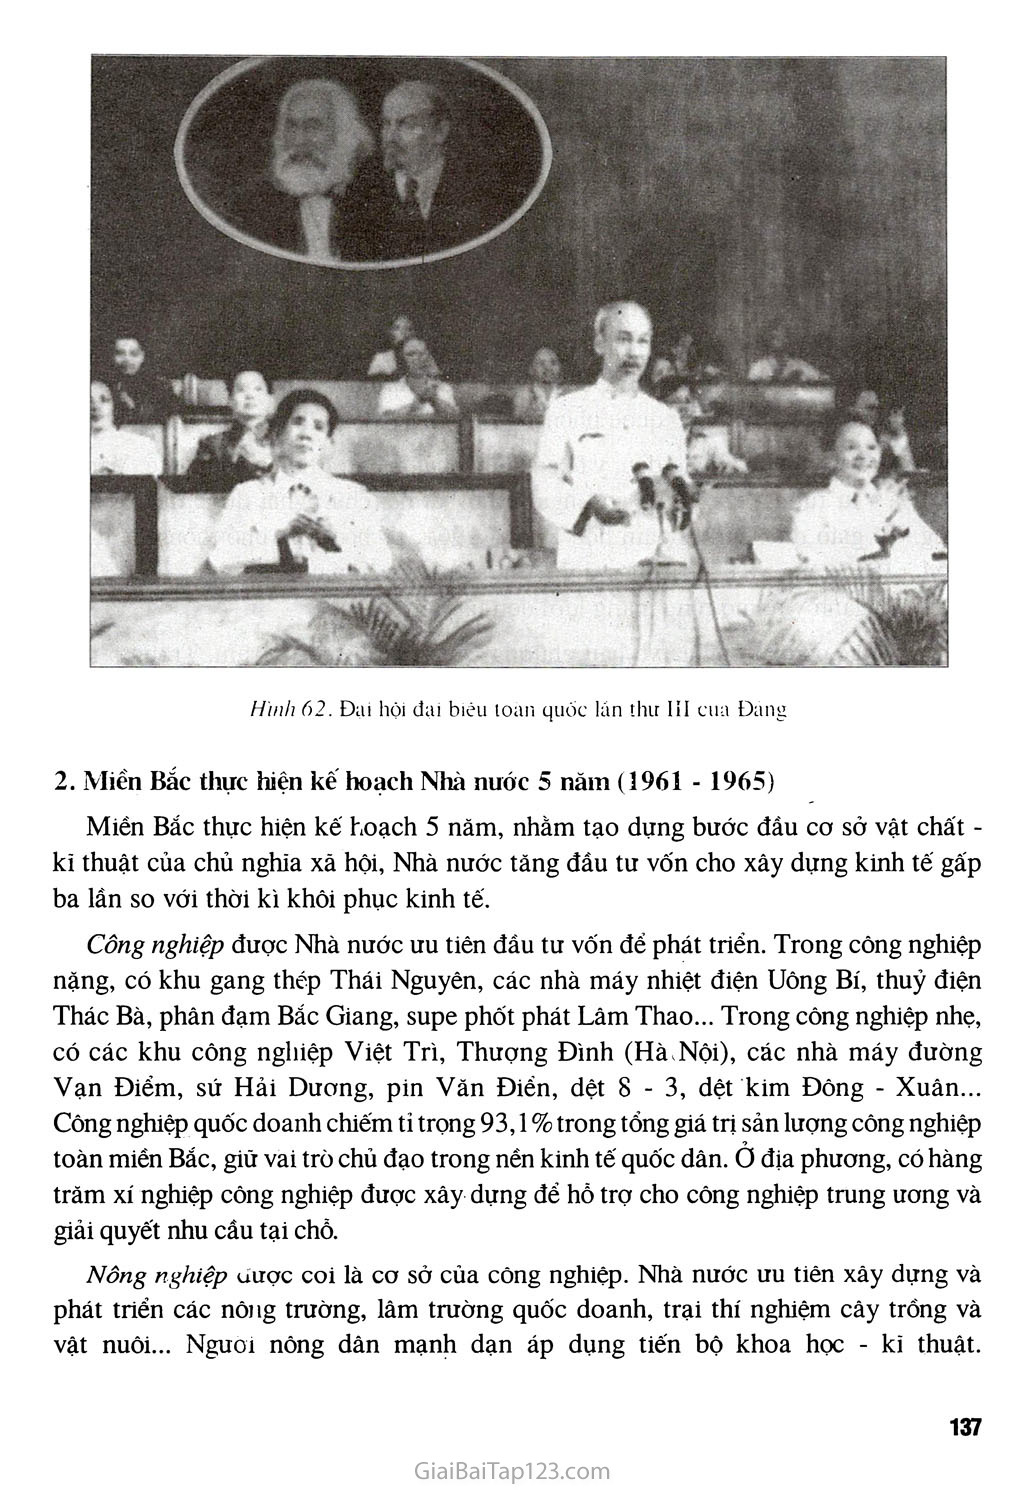 Bài 28 - Xây dựng chủ nghĩa xã hội ở miền Bắc, đấu tranh chống đế quốc Mĩ và chính quyền Sài Gòn ở miền Nam (1954 - 1965) trang 10